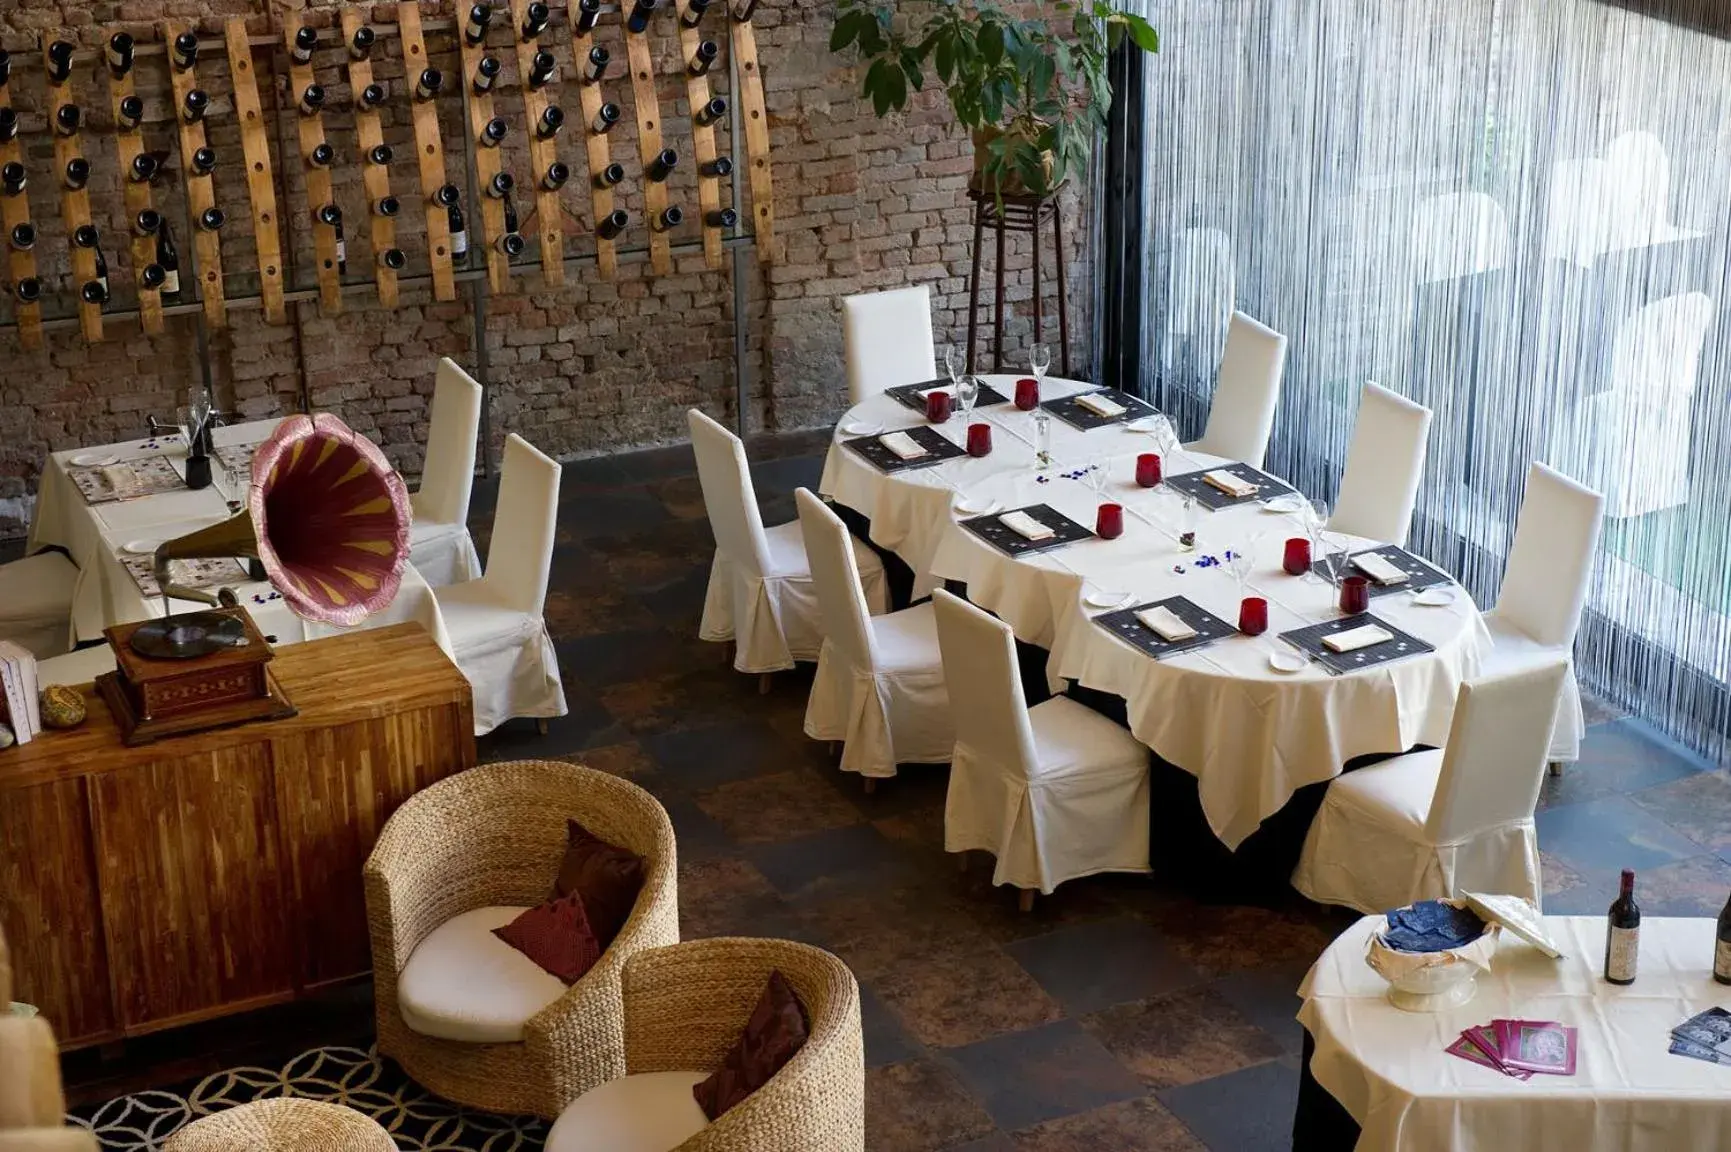 Restaurant/Places to Eat in Albergo Cavallino